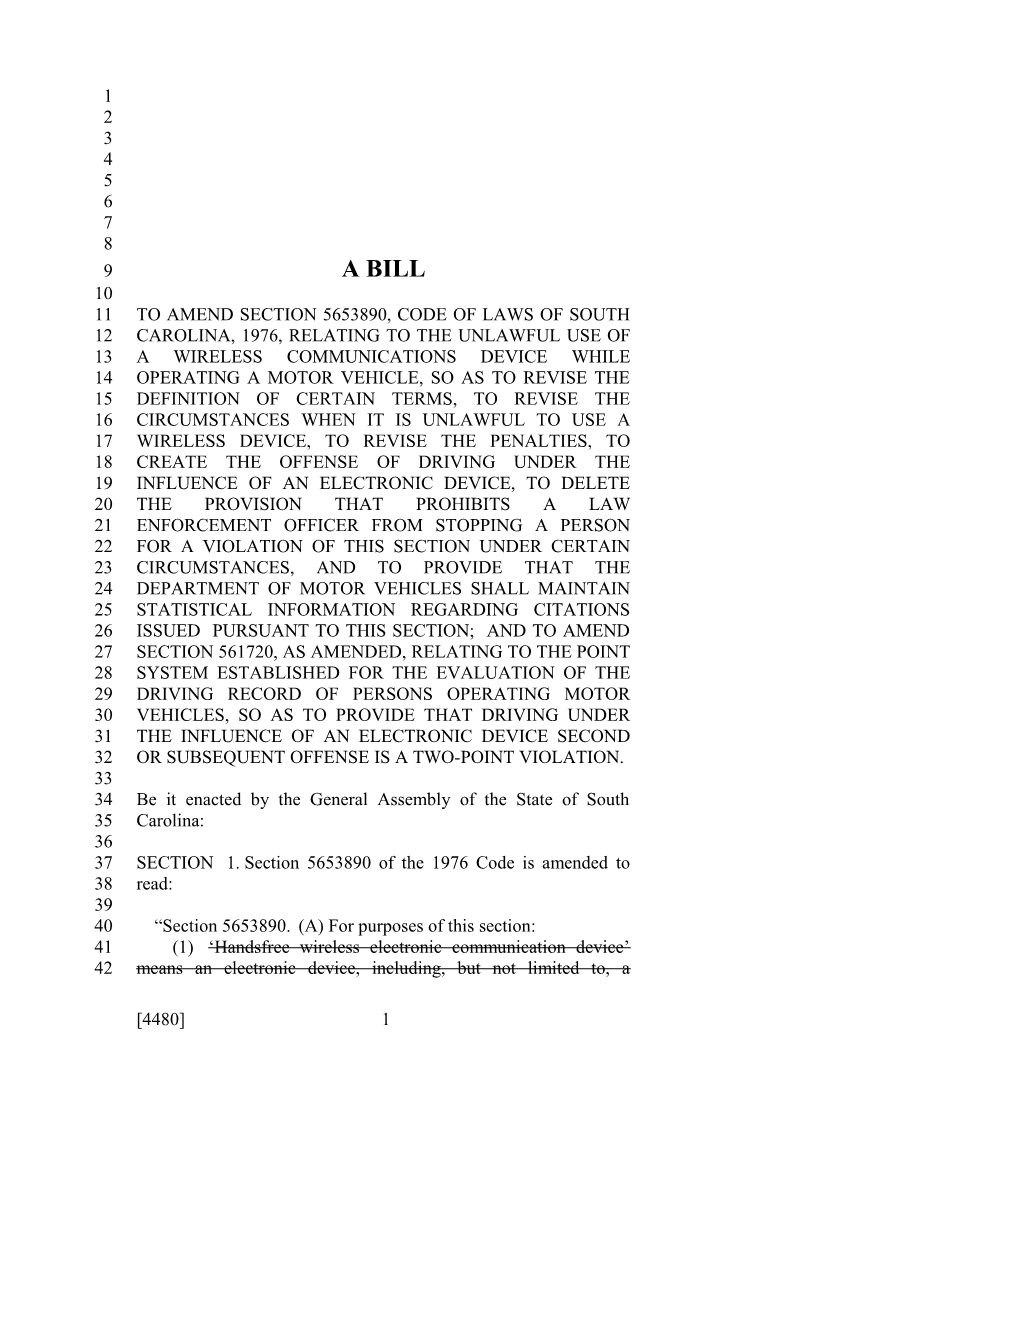 2017-2018 Bill 4480 Text of Previous Version (Dec. 13, 2017) - South Carolina Legislature Online